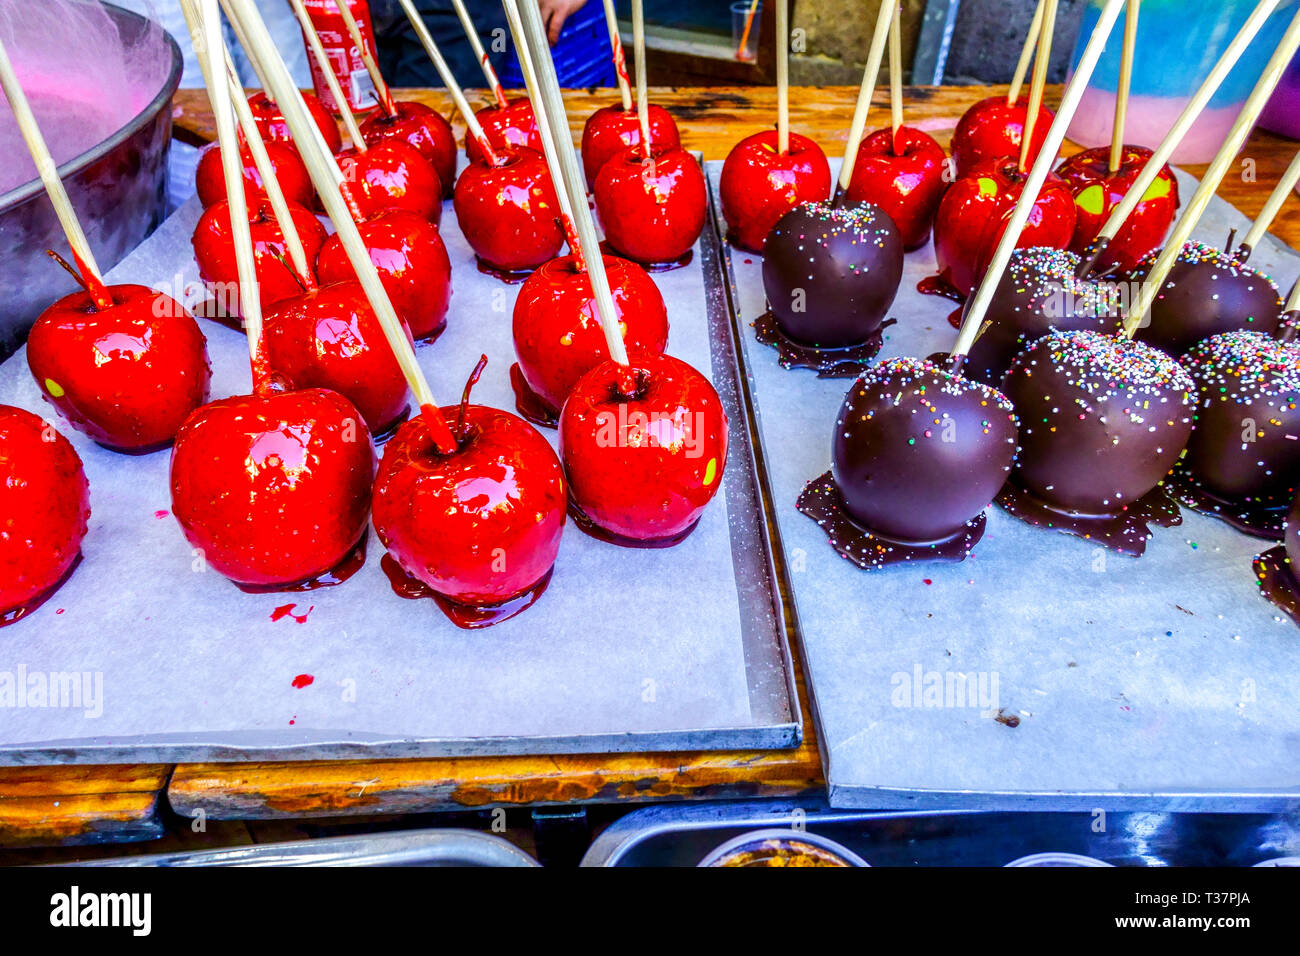 Le mele al cioccolato su un bastone, i dolci valenciani vendono su una bancarella di strada, le mele al caramello Foto Stock